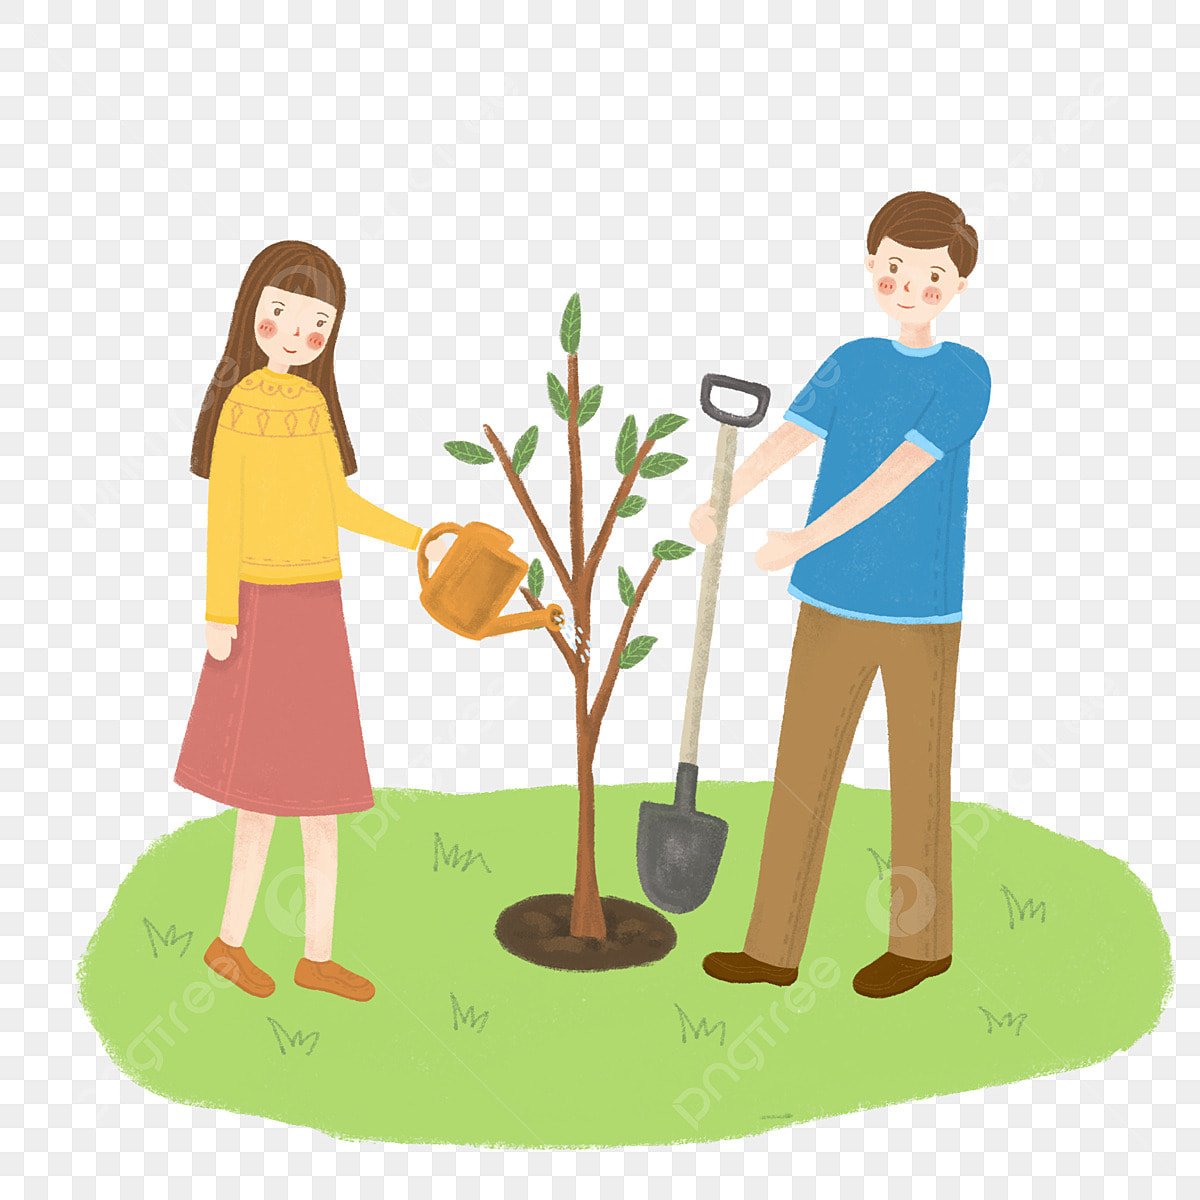 Растение друзья человека. Посадка деревьев. Посадка деревьев детьми. Посадка деревьев иллюстрация. Дети сажают деревья.